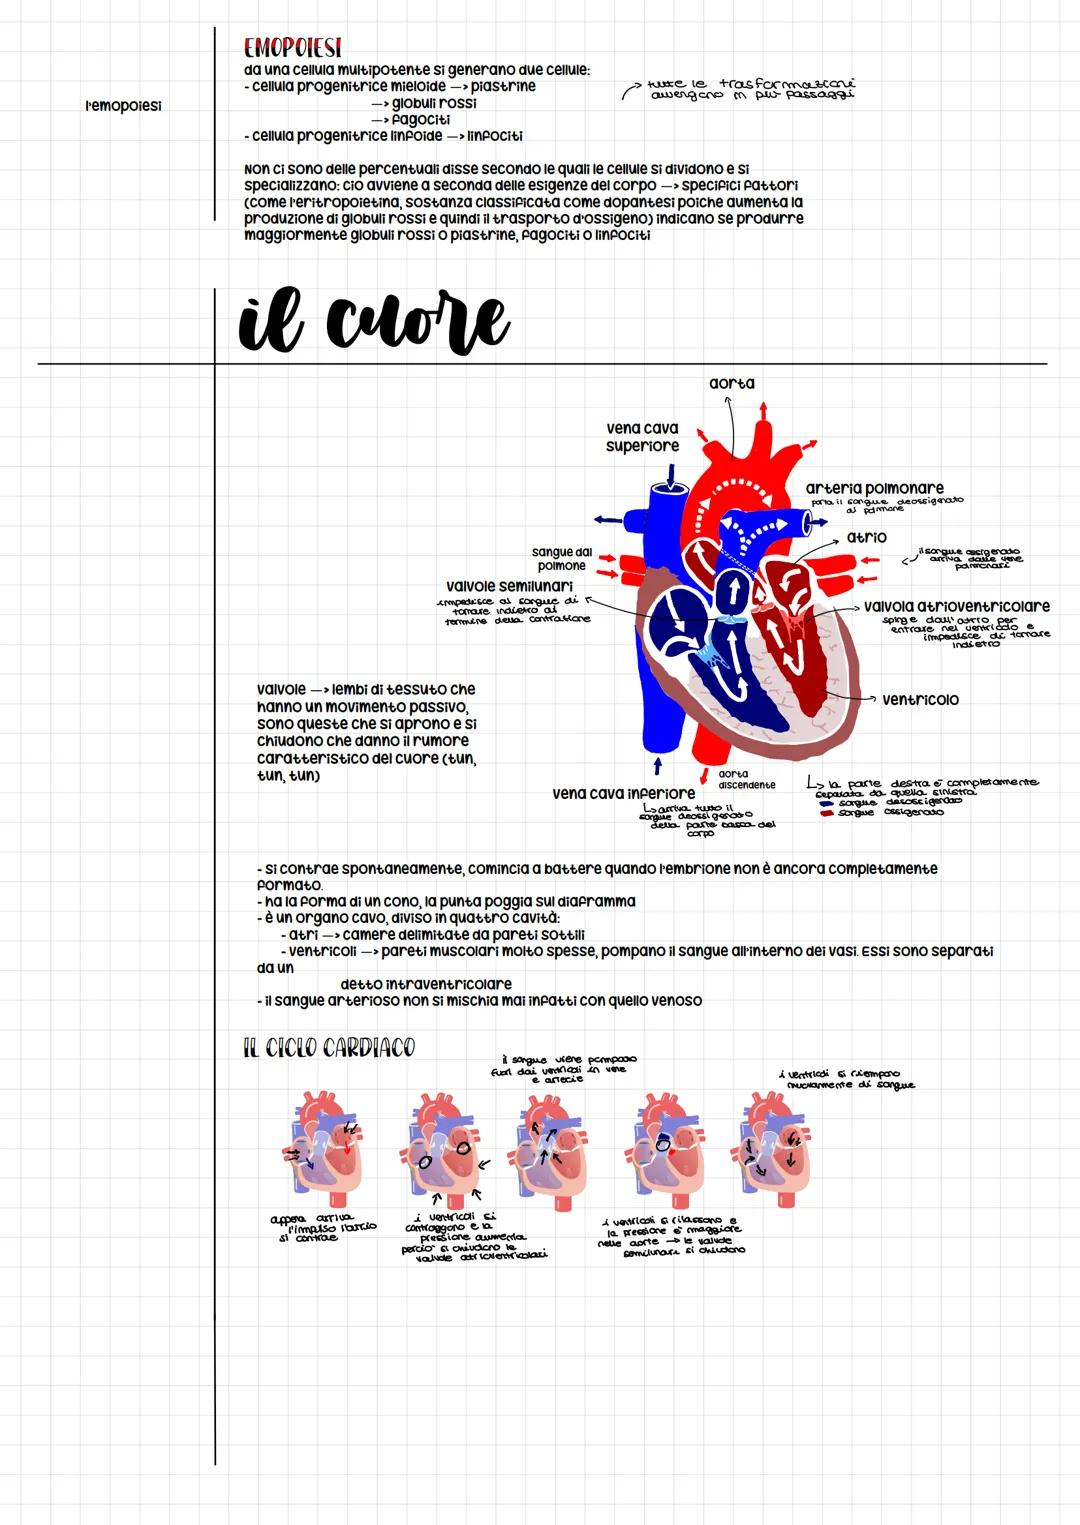 l'apparato cardiovascolare
il sistema cardiovascolare o circolatorio è composto da due
elementi:
cuore, che punge da pompa
il sistema cardio